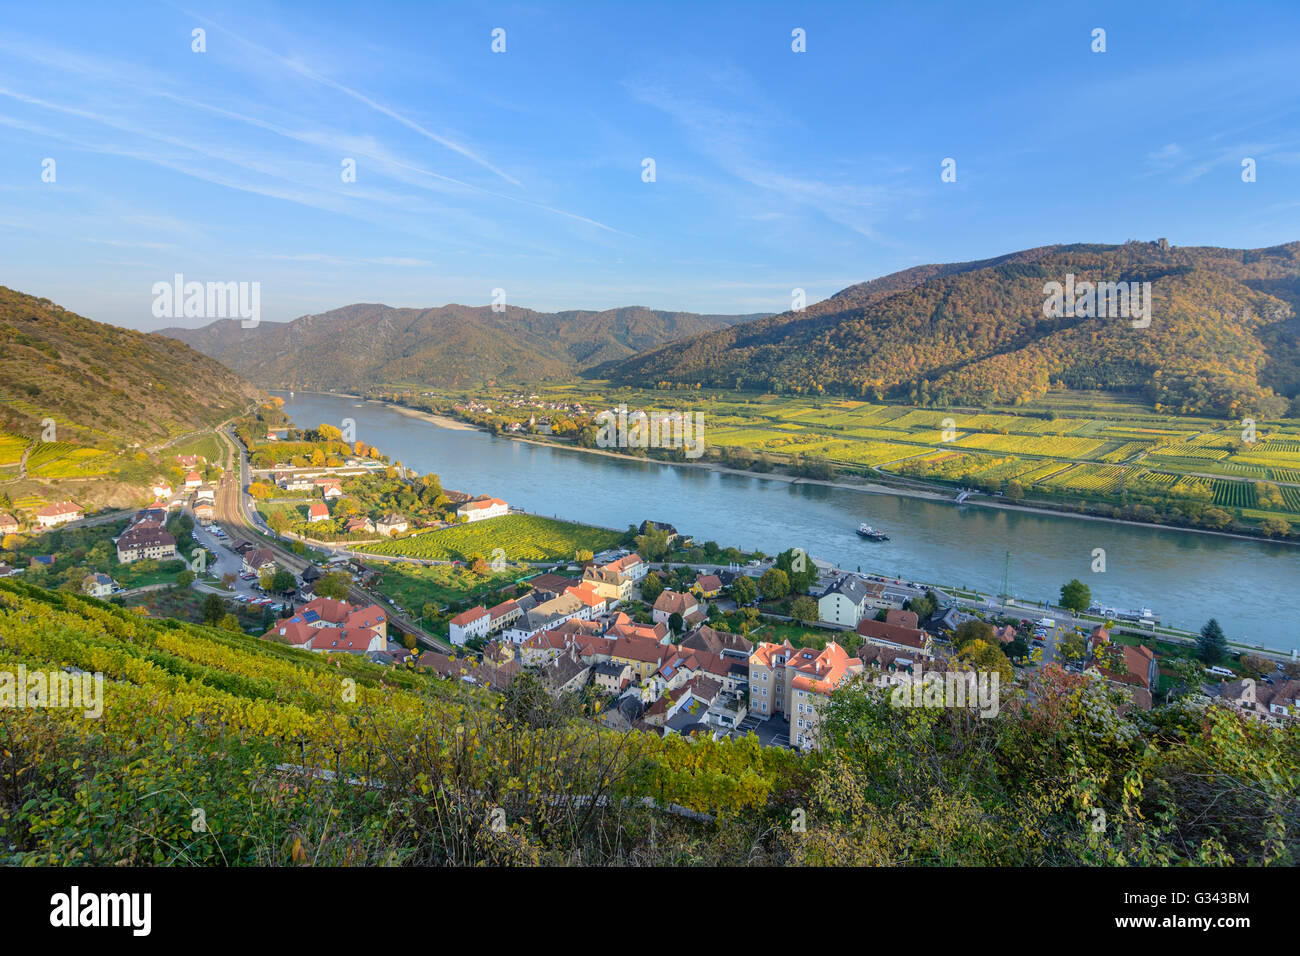 Blick vom 1000 Eimer Berg auf Spitz und der Donau, Österreich,  Niederösterreich, Niederösterreich, Wachau, Spitz an der Donau  Stockfotografie - Alamy